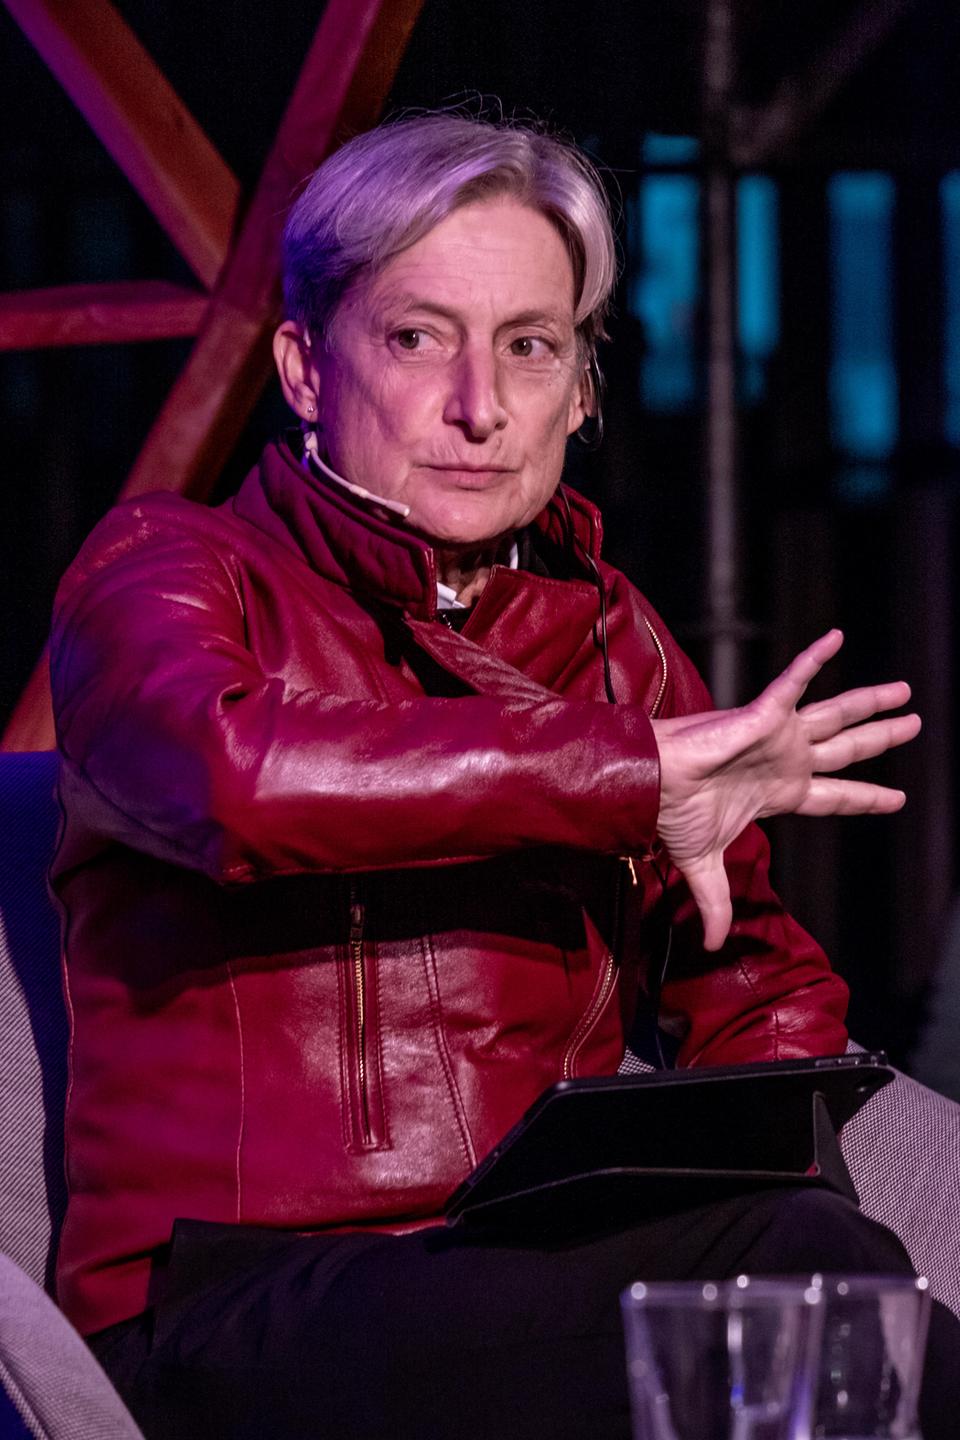 Porträtaufnahme der Philosophin Judith Butler in roter Lederjacke während einer Diskussionsveranstaltung auf einer Bühne.